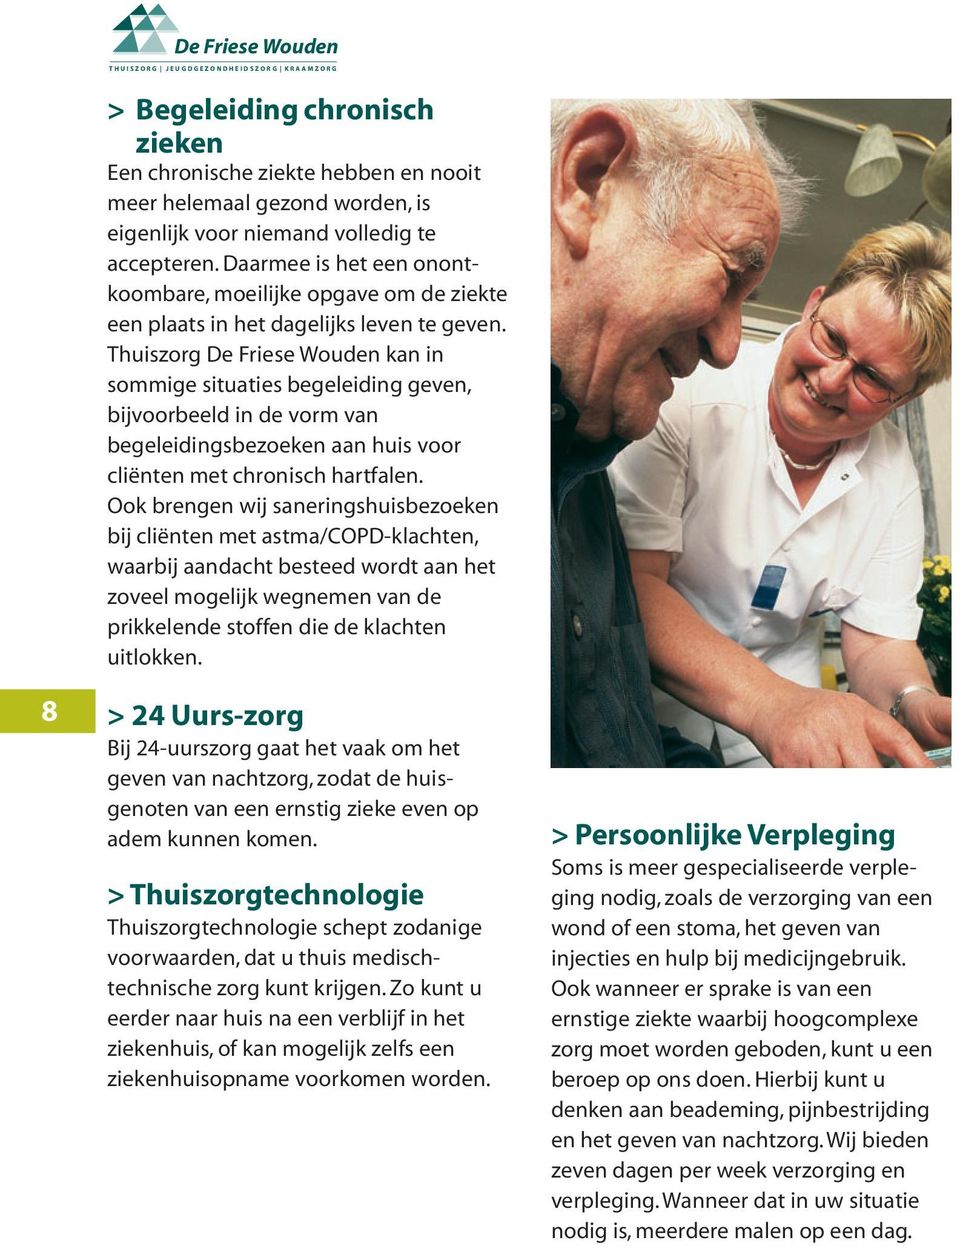 Thuiszorg De Friese Wouden kan in sommige situaties begeleiding geven, bijvoorbeeld in de vorm van begeleidingsbezoeken aan huis voor cliënten met chronisch hartfalen.